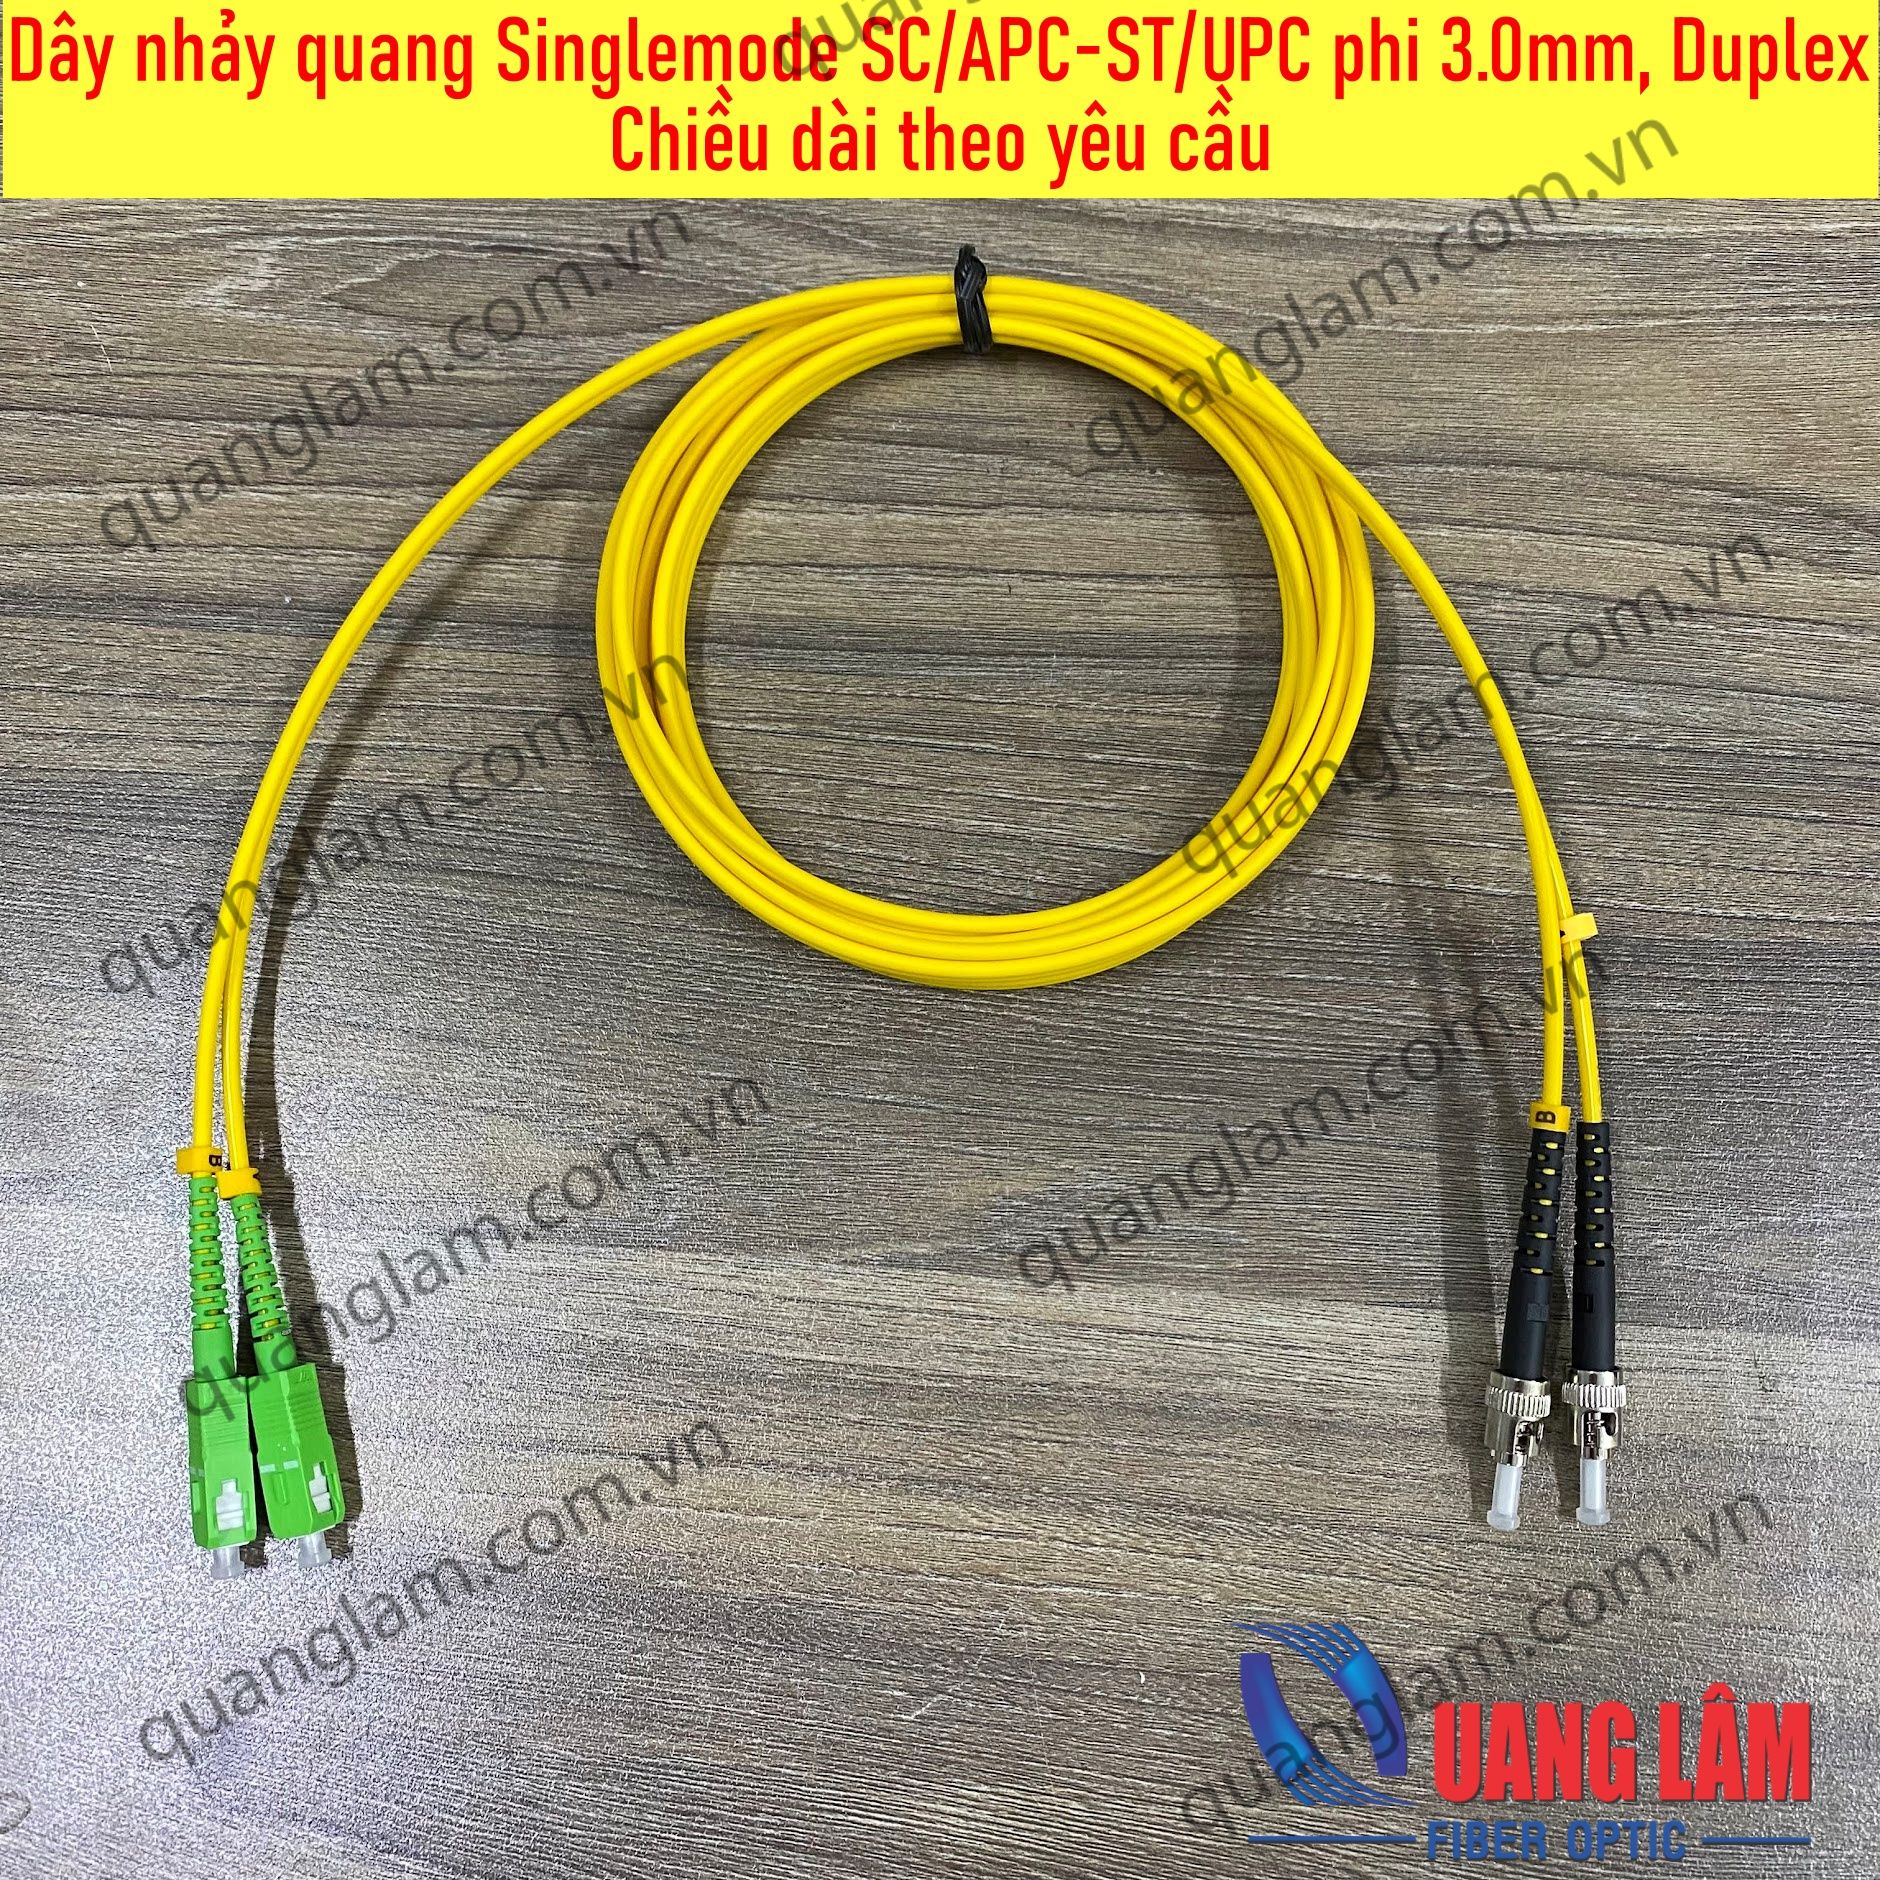 Dây nhảy quang Singlemode SC/APC-ST/UPC phi 3.0mm, Duplex Chiều dài theo yêu cầu